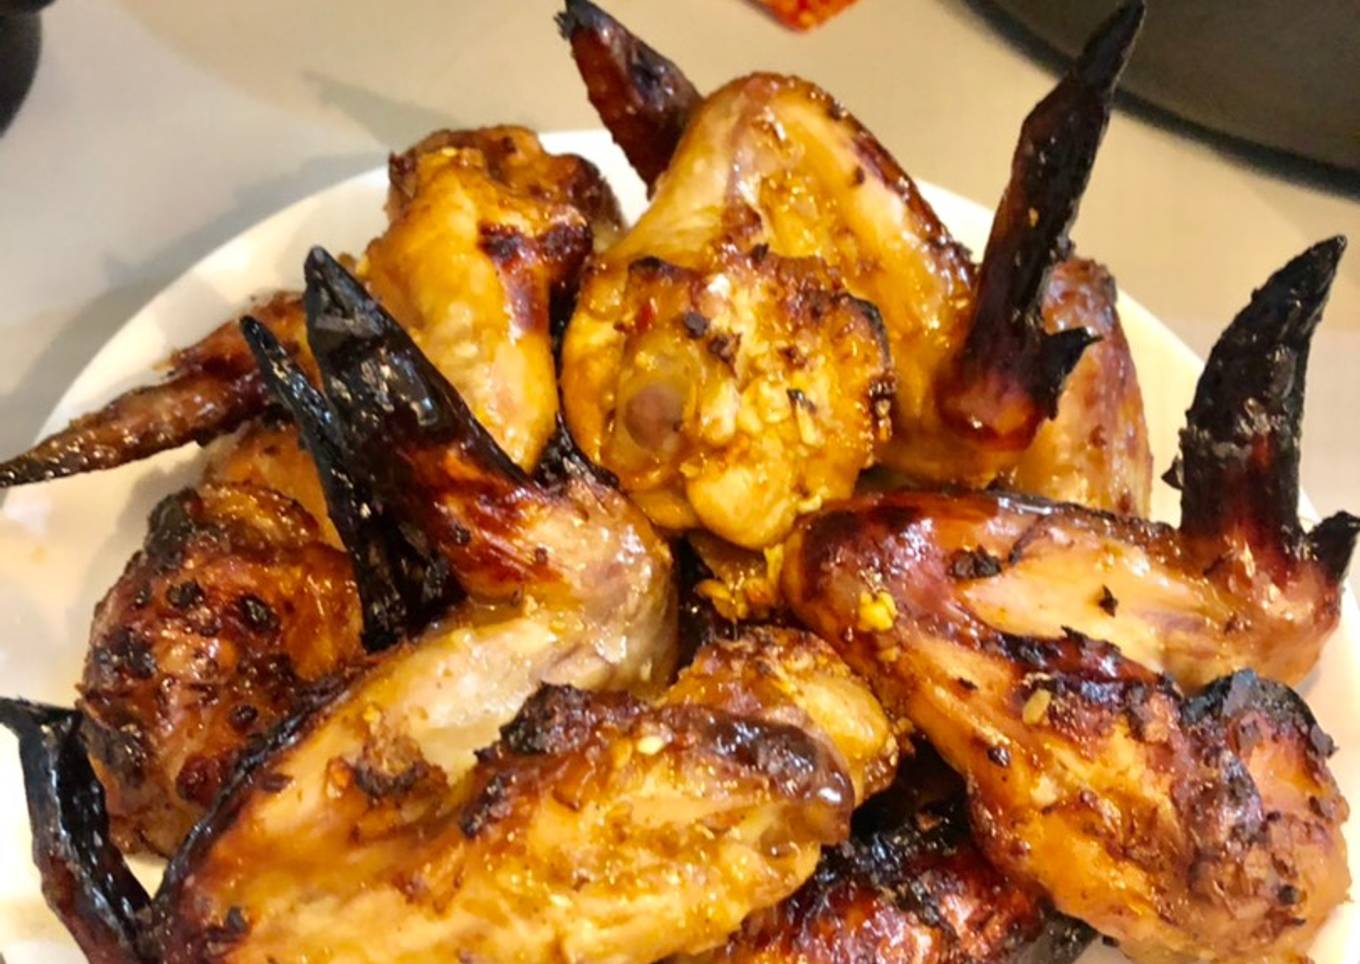 Bakkar with chicken wings